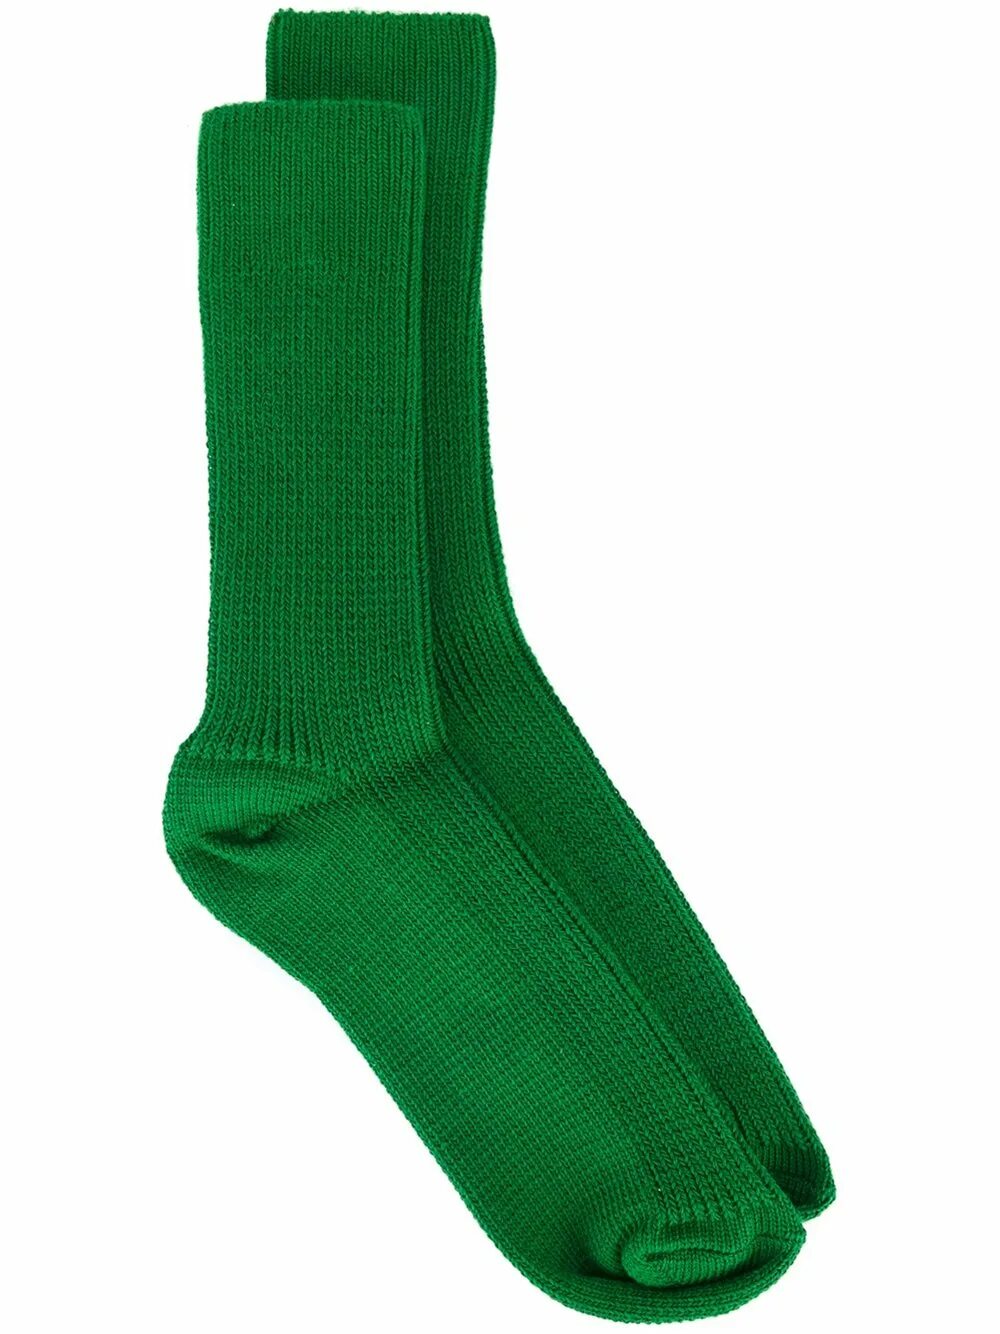 Зеленые носки. Носки зеленые женские. Носки зеленые однотонные. Салатовые носки мужские. Носки зеленые купить